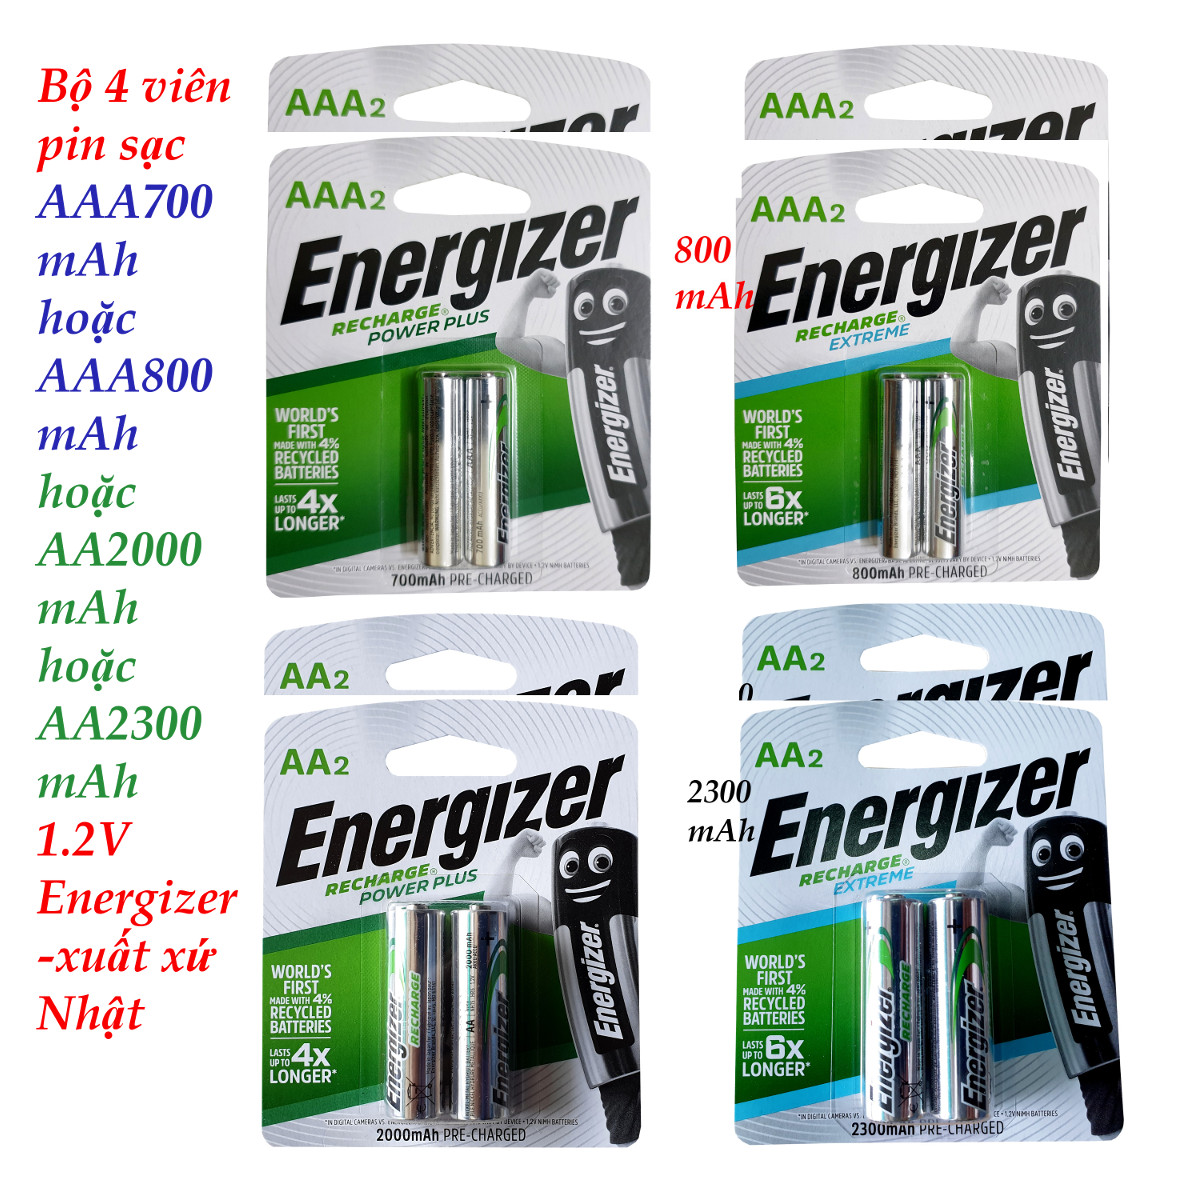 Bộ 4 viên pin sạc AA 2a hoặc AAA 3a - 1.2V Energizer 2000mAh 2300mAh